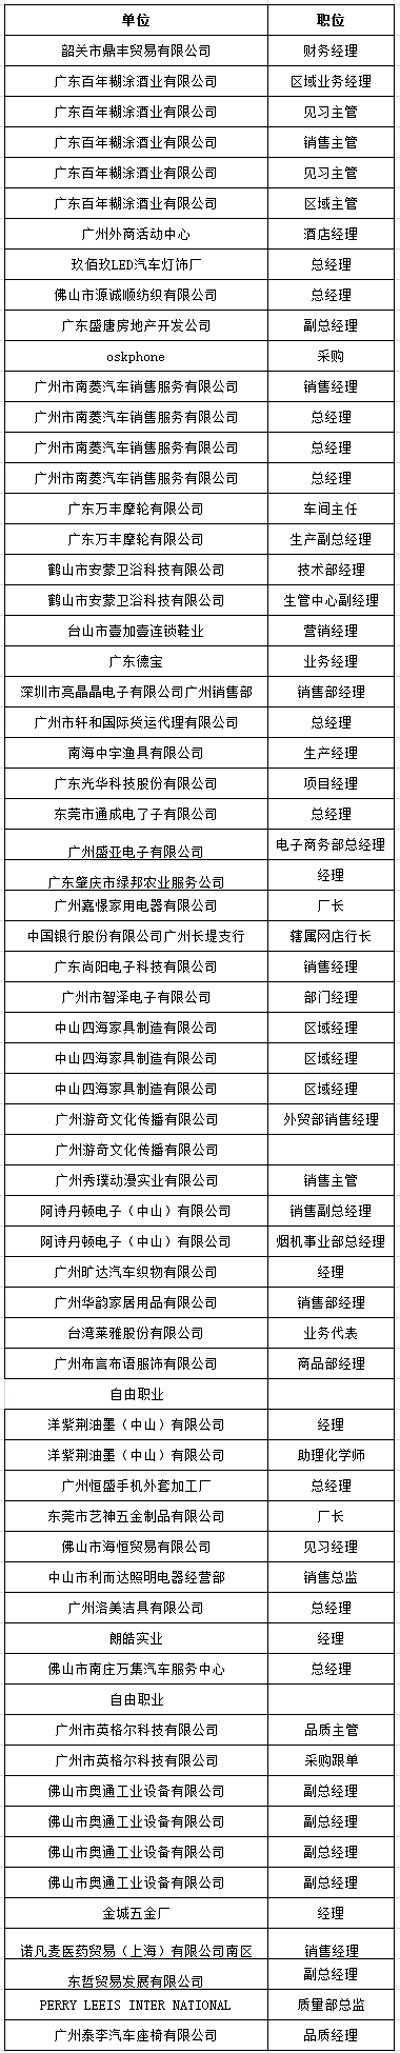 中山大学时代华商教育中心在职经理工商管理高级研修班高级研修班41班学员名录